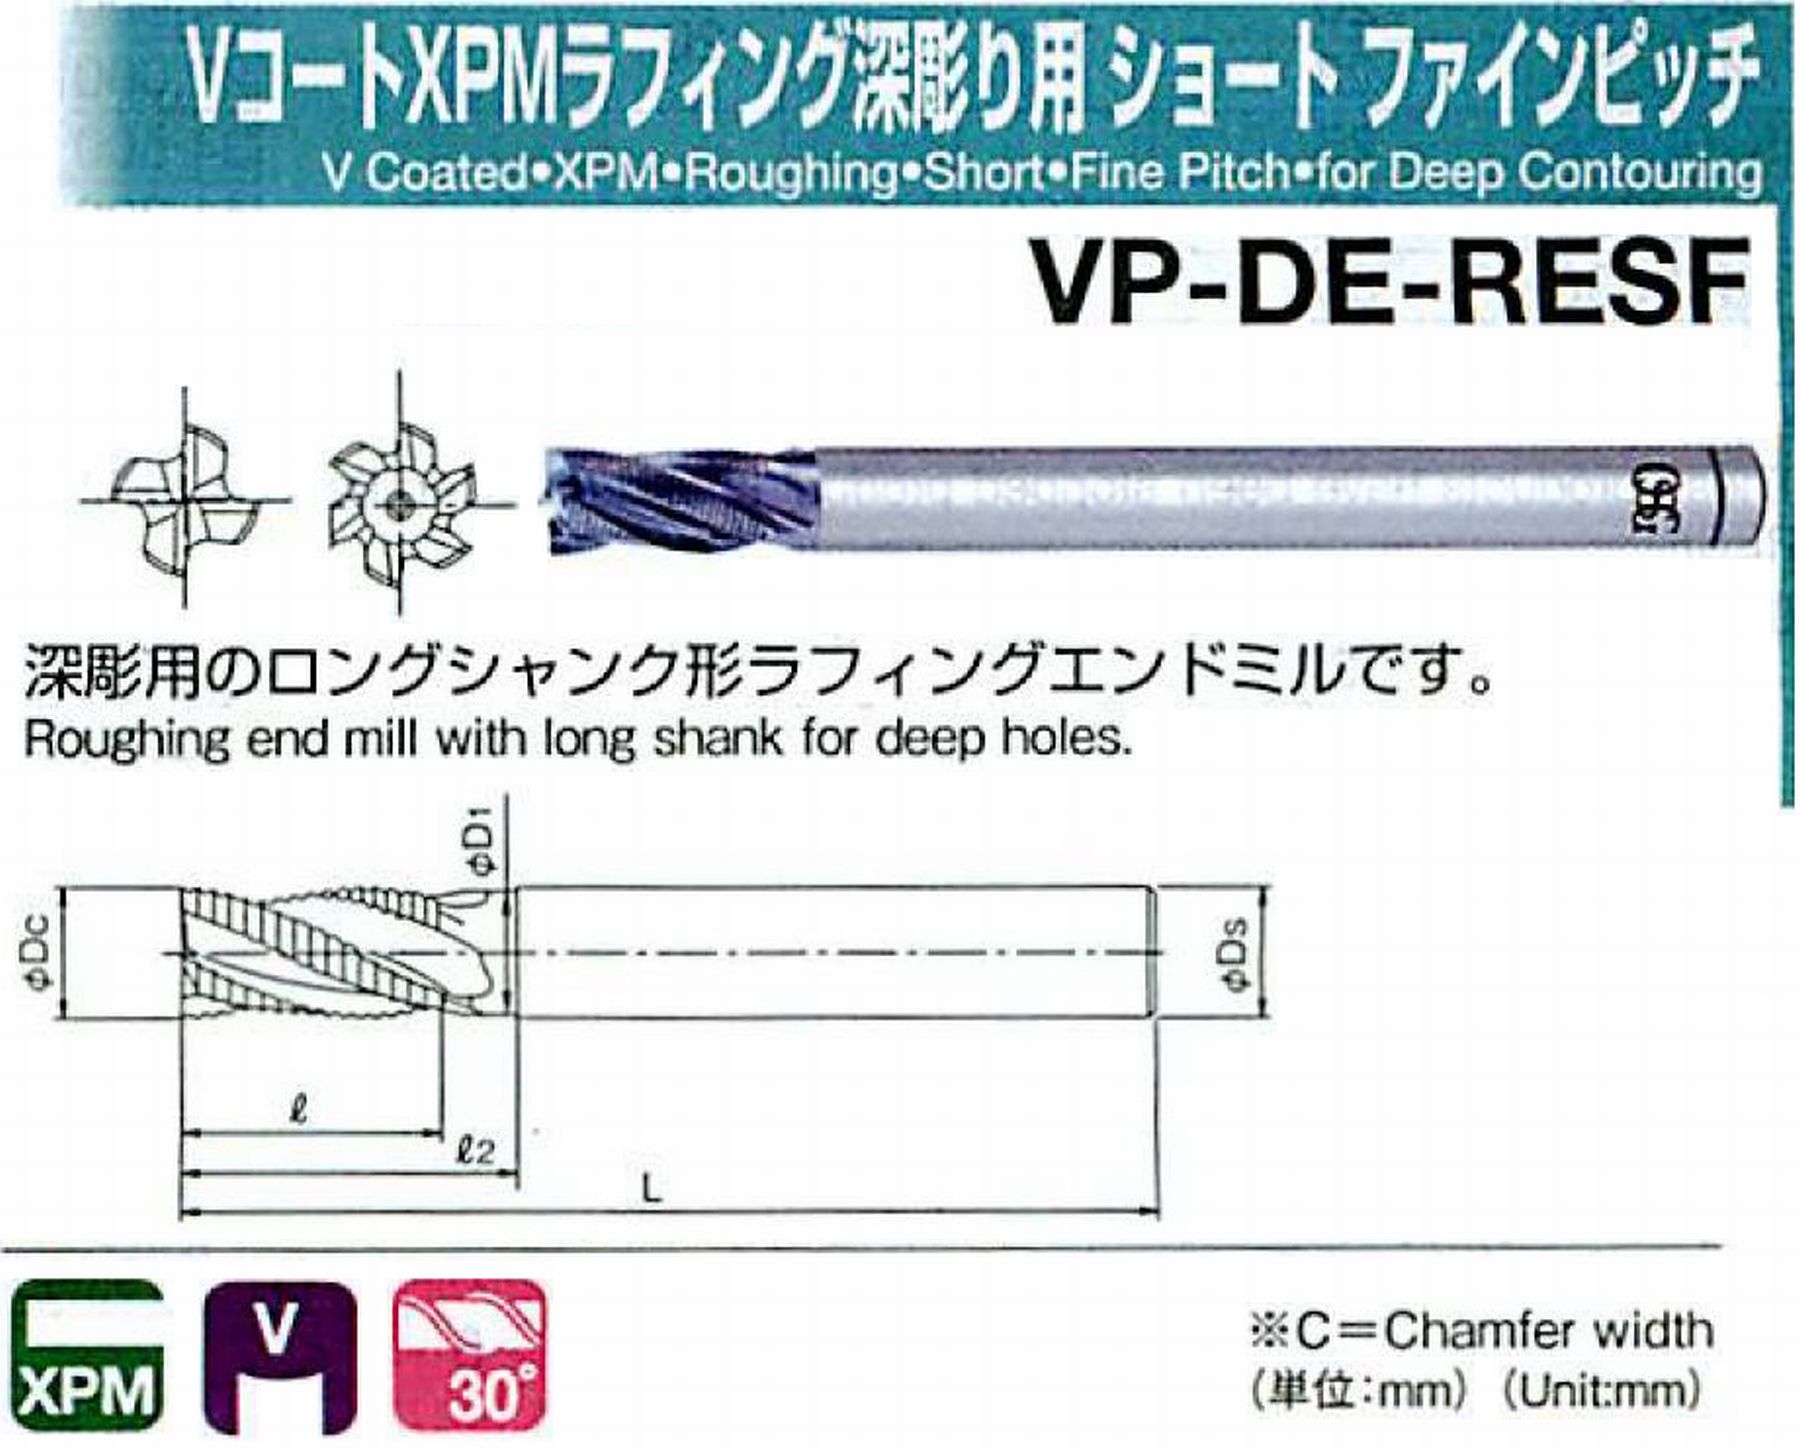 オーエスジー/OSG VコートXPMラフィング深彫り用 ショート ファインピッチ VP-DE-RESF 外径40 全長250 刃長63 シャンク径32mm 首下長- 首径- コーナ面取幅0.8 刃数6